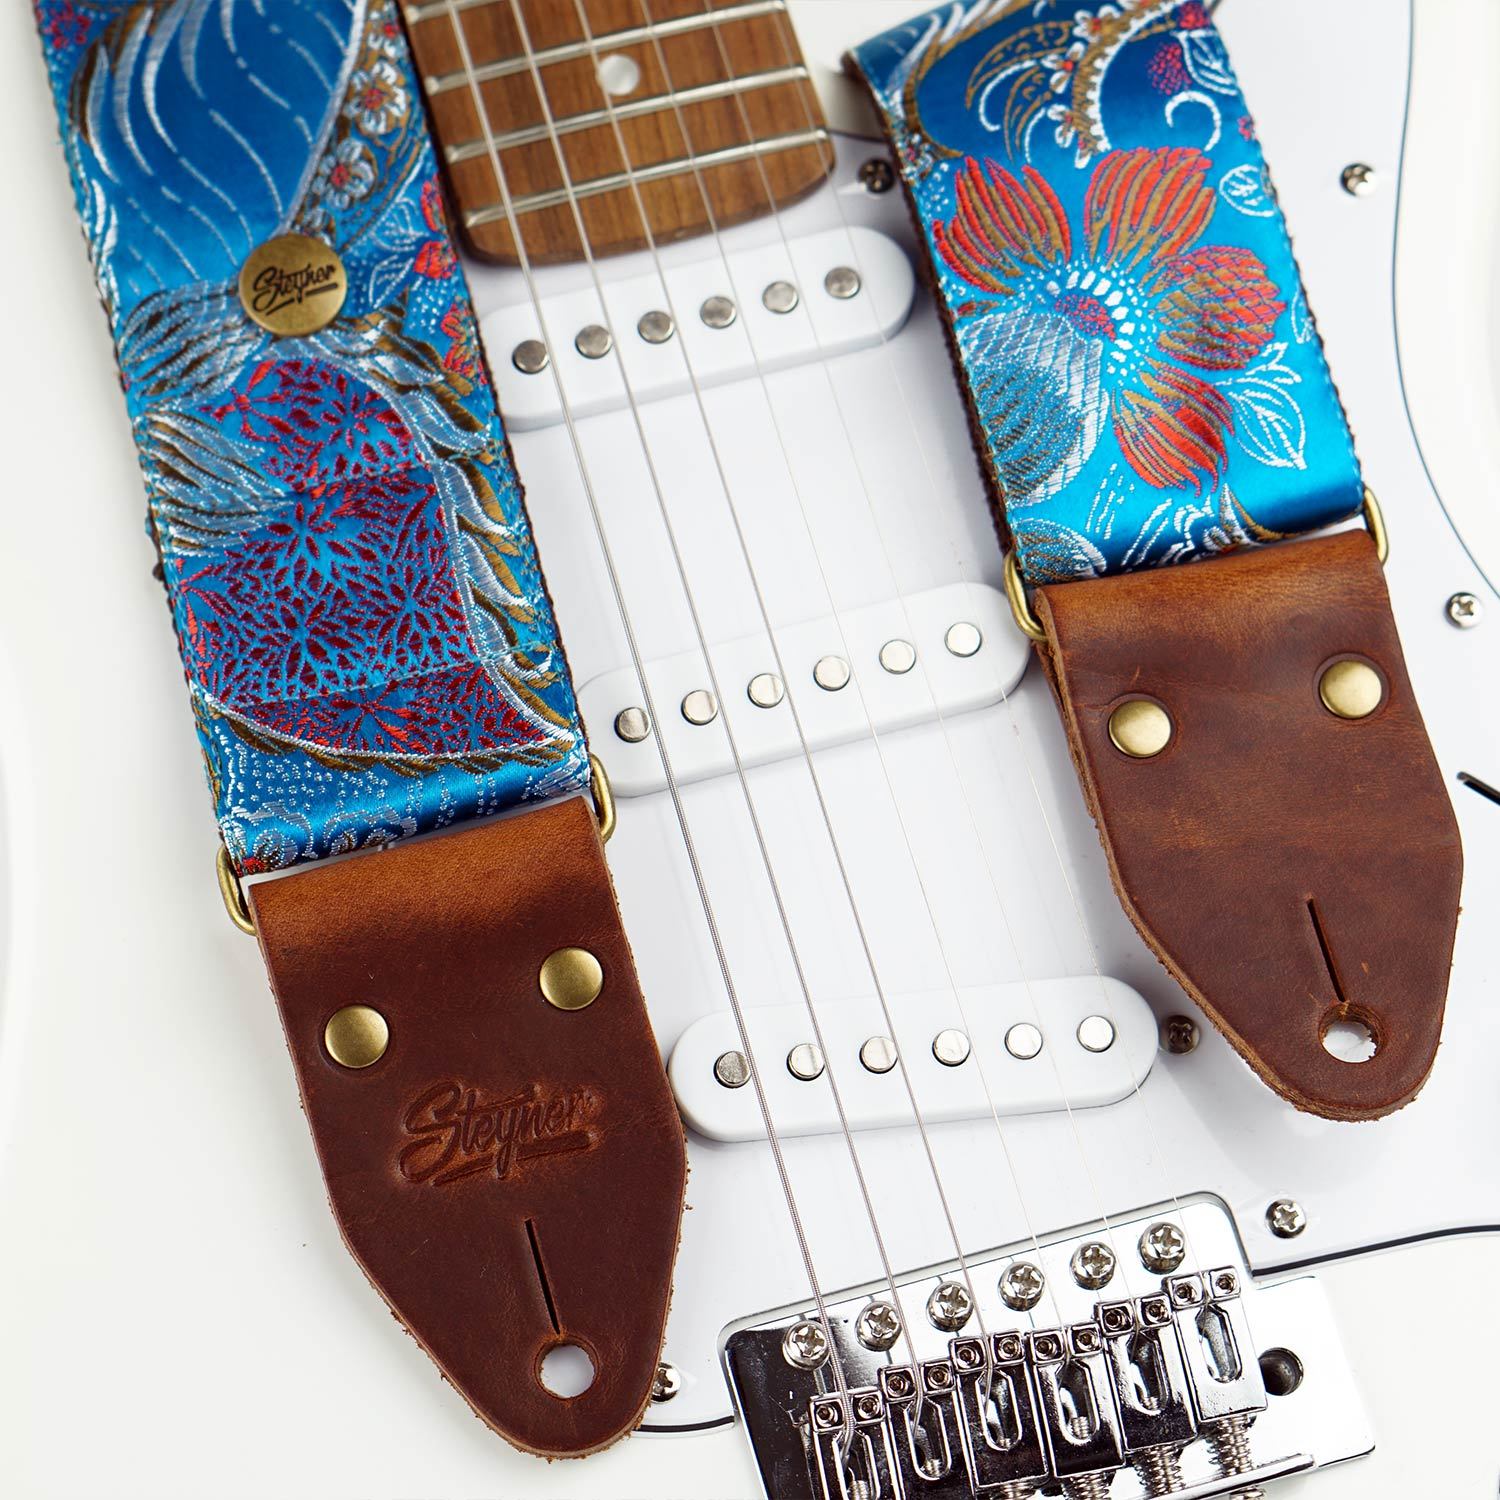 Bunter Gitarrengurt blau im Vintage Stil mit Retro Blumen Muster auf einer weissen E-Gitarre